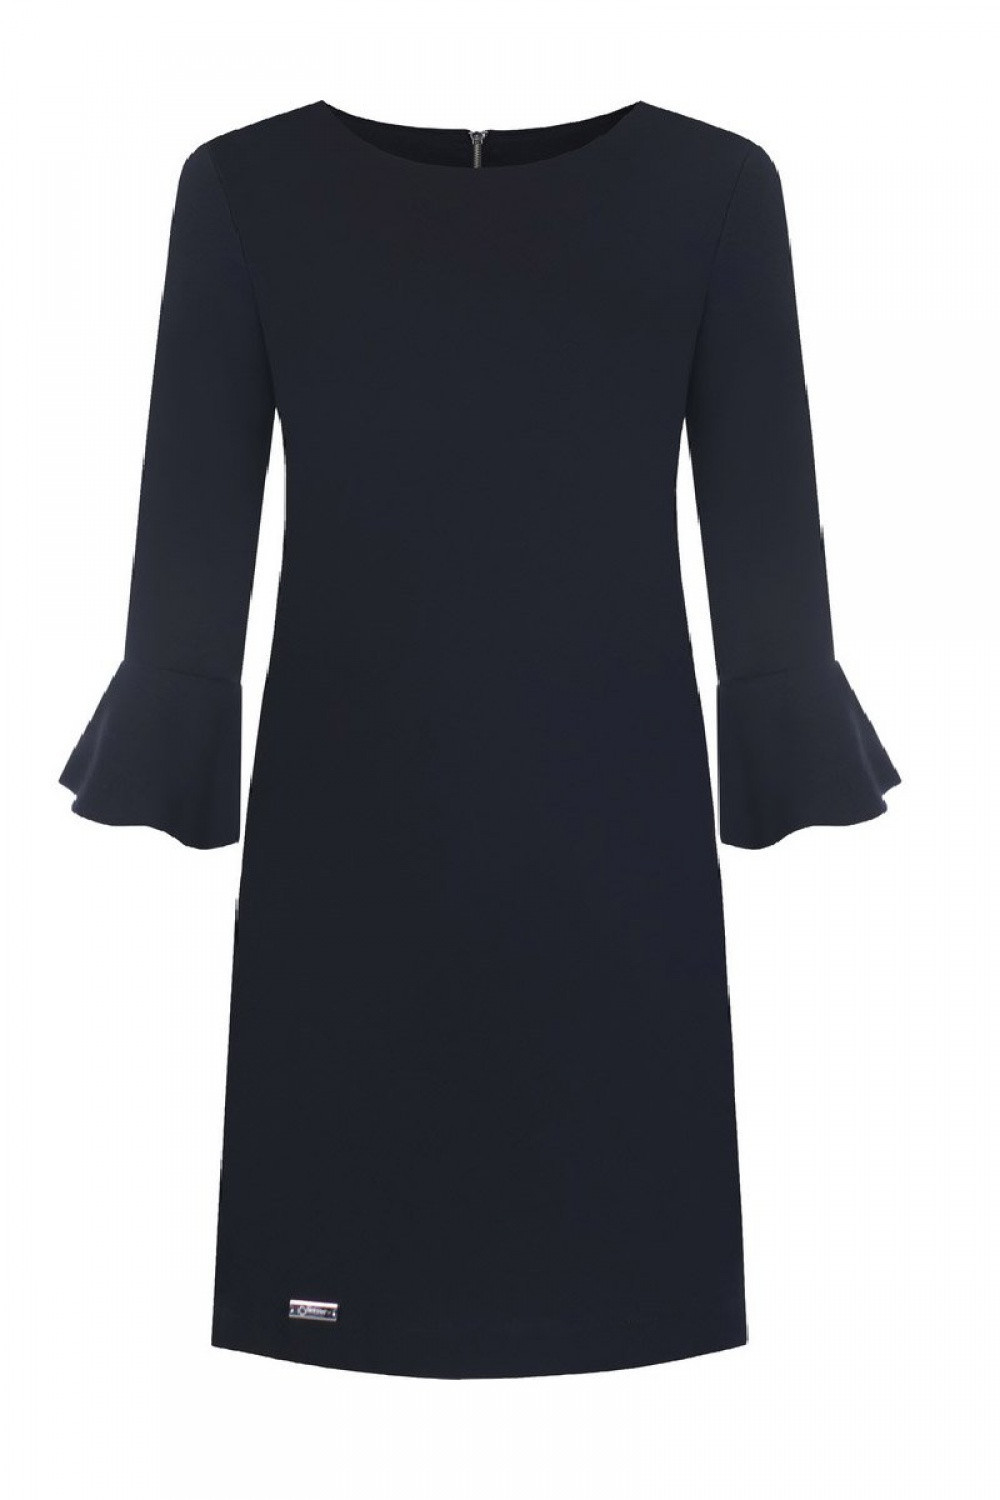 Společenské šaty Erin model 108527 - Jersa 52 černá